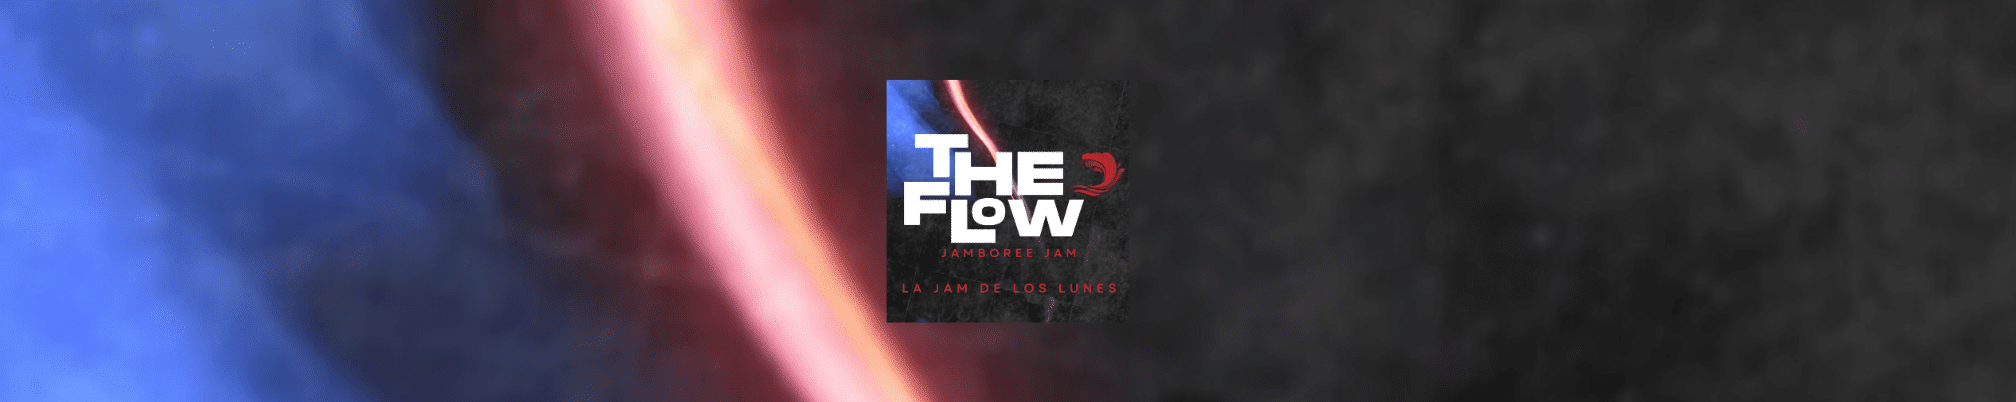 The Flow - La Jam dels dilluns